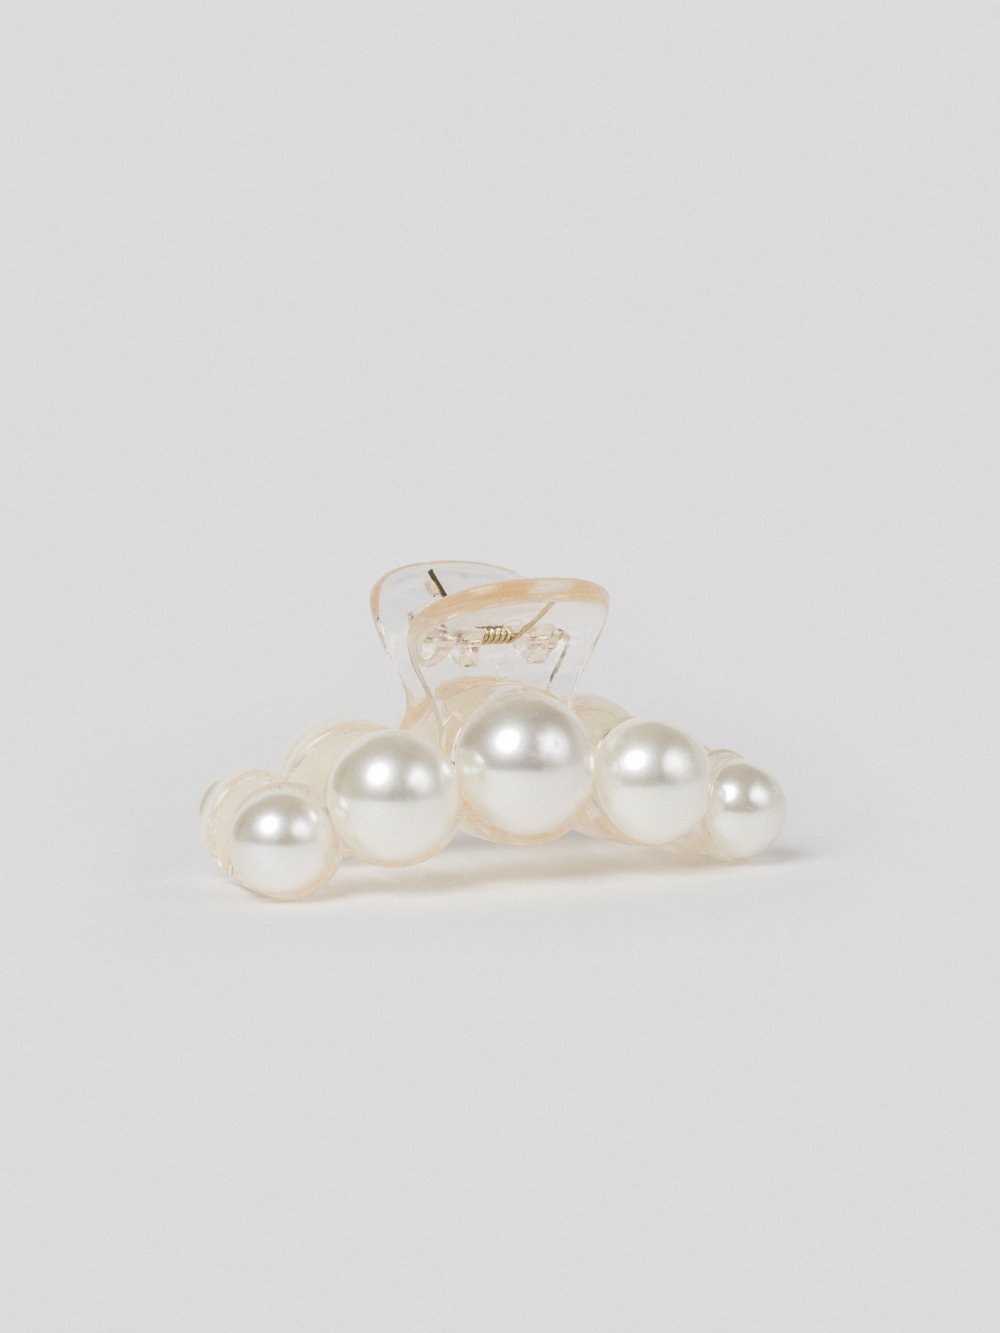 Biely štipec s perlami